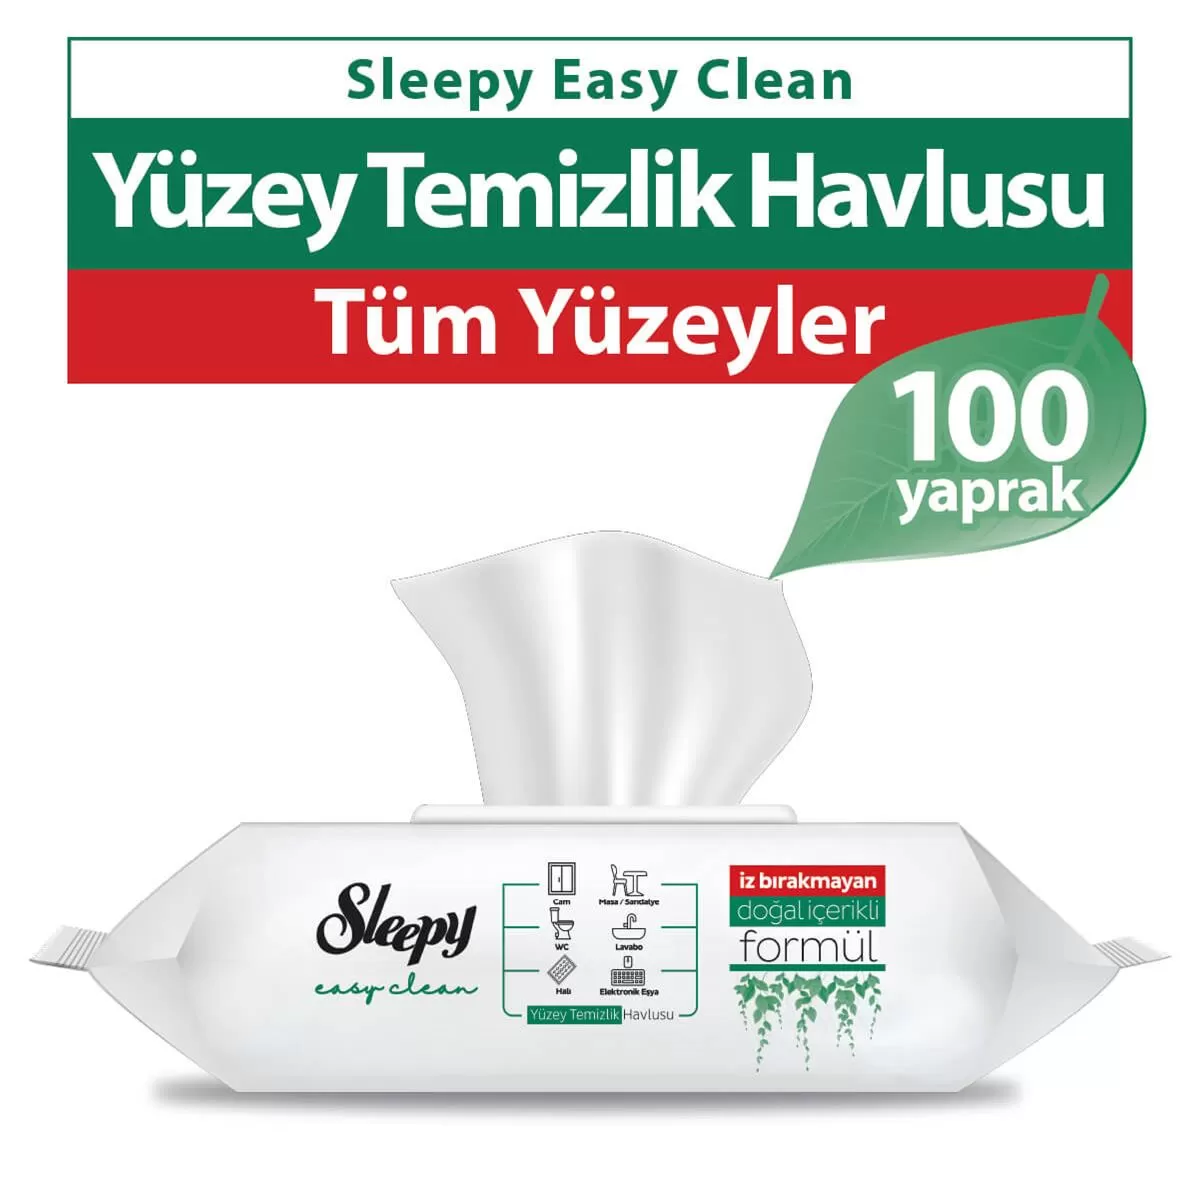 Sleepy Easy Clean Yüzey Temizlik Havlusu 100 Yaprak 7 Paket